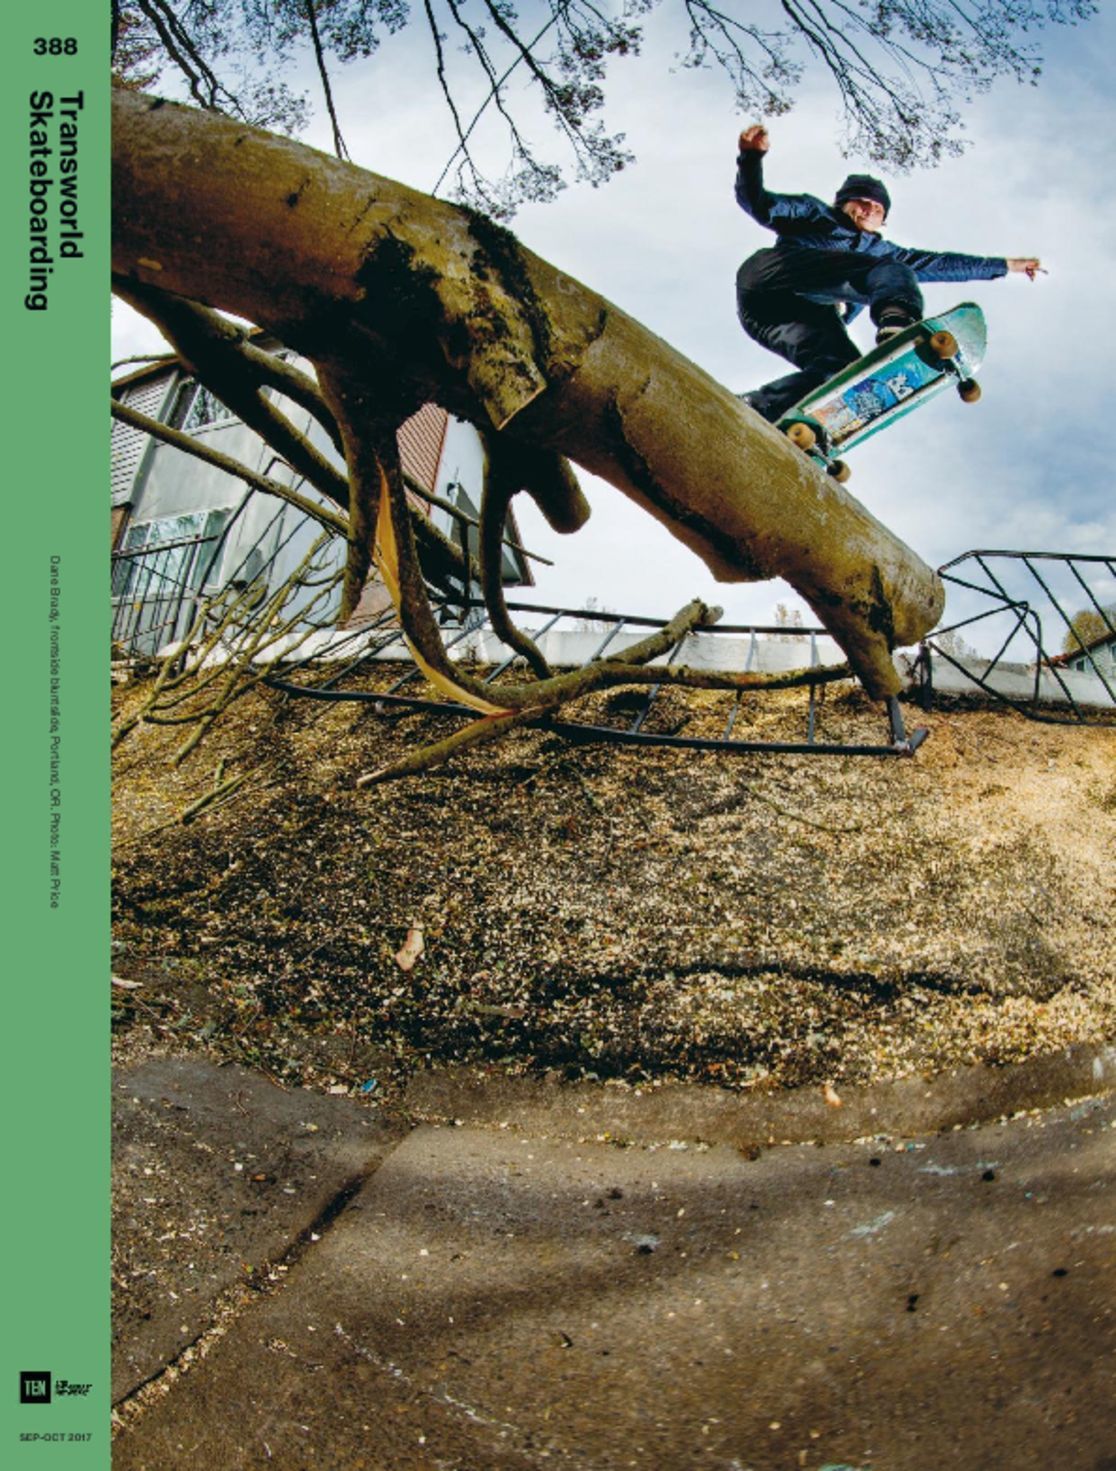 5613 Transworld Skateboarding Cover 2017 September 1 Issue 